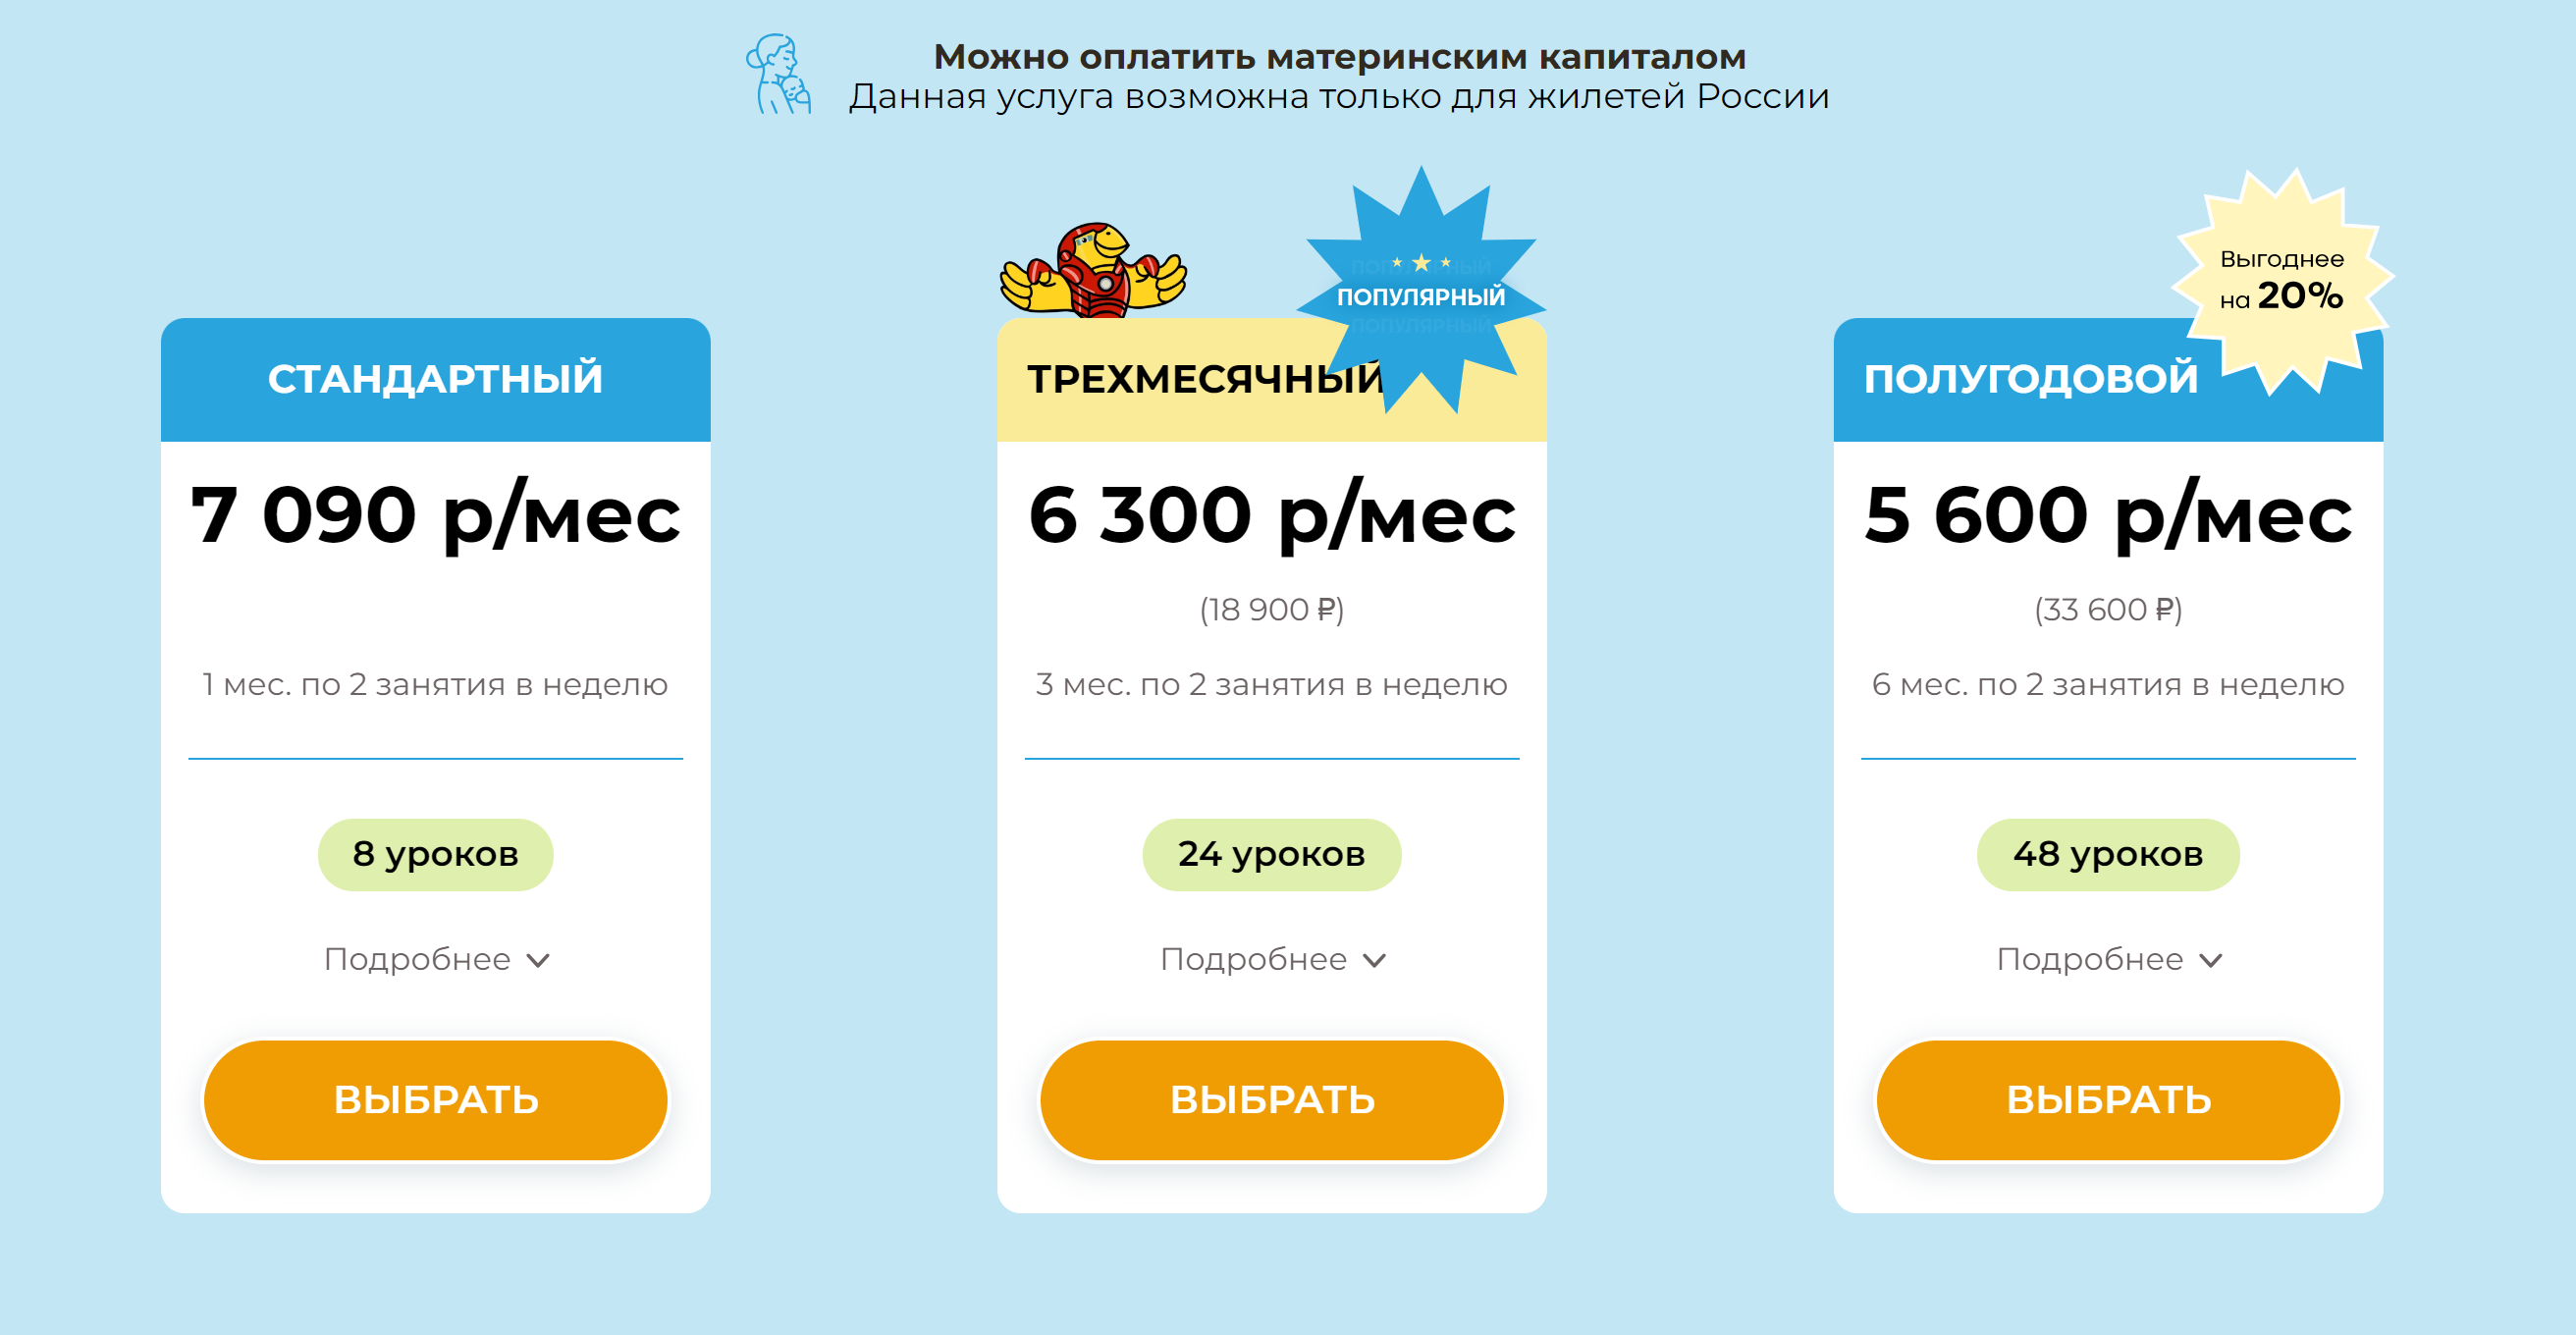 Расценки на занятия в детском центре по ментальной арифметике. Источник: abakus-center.ru